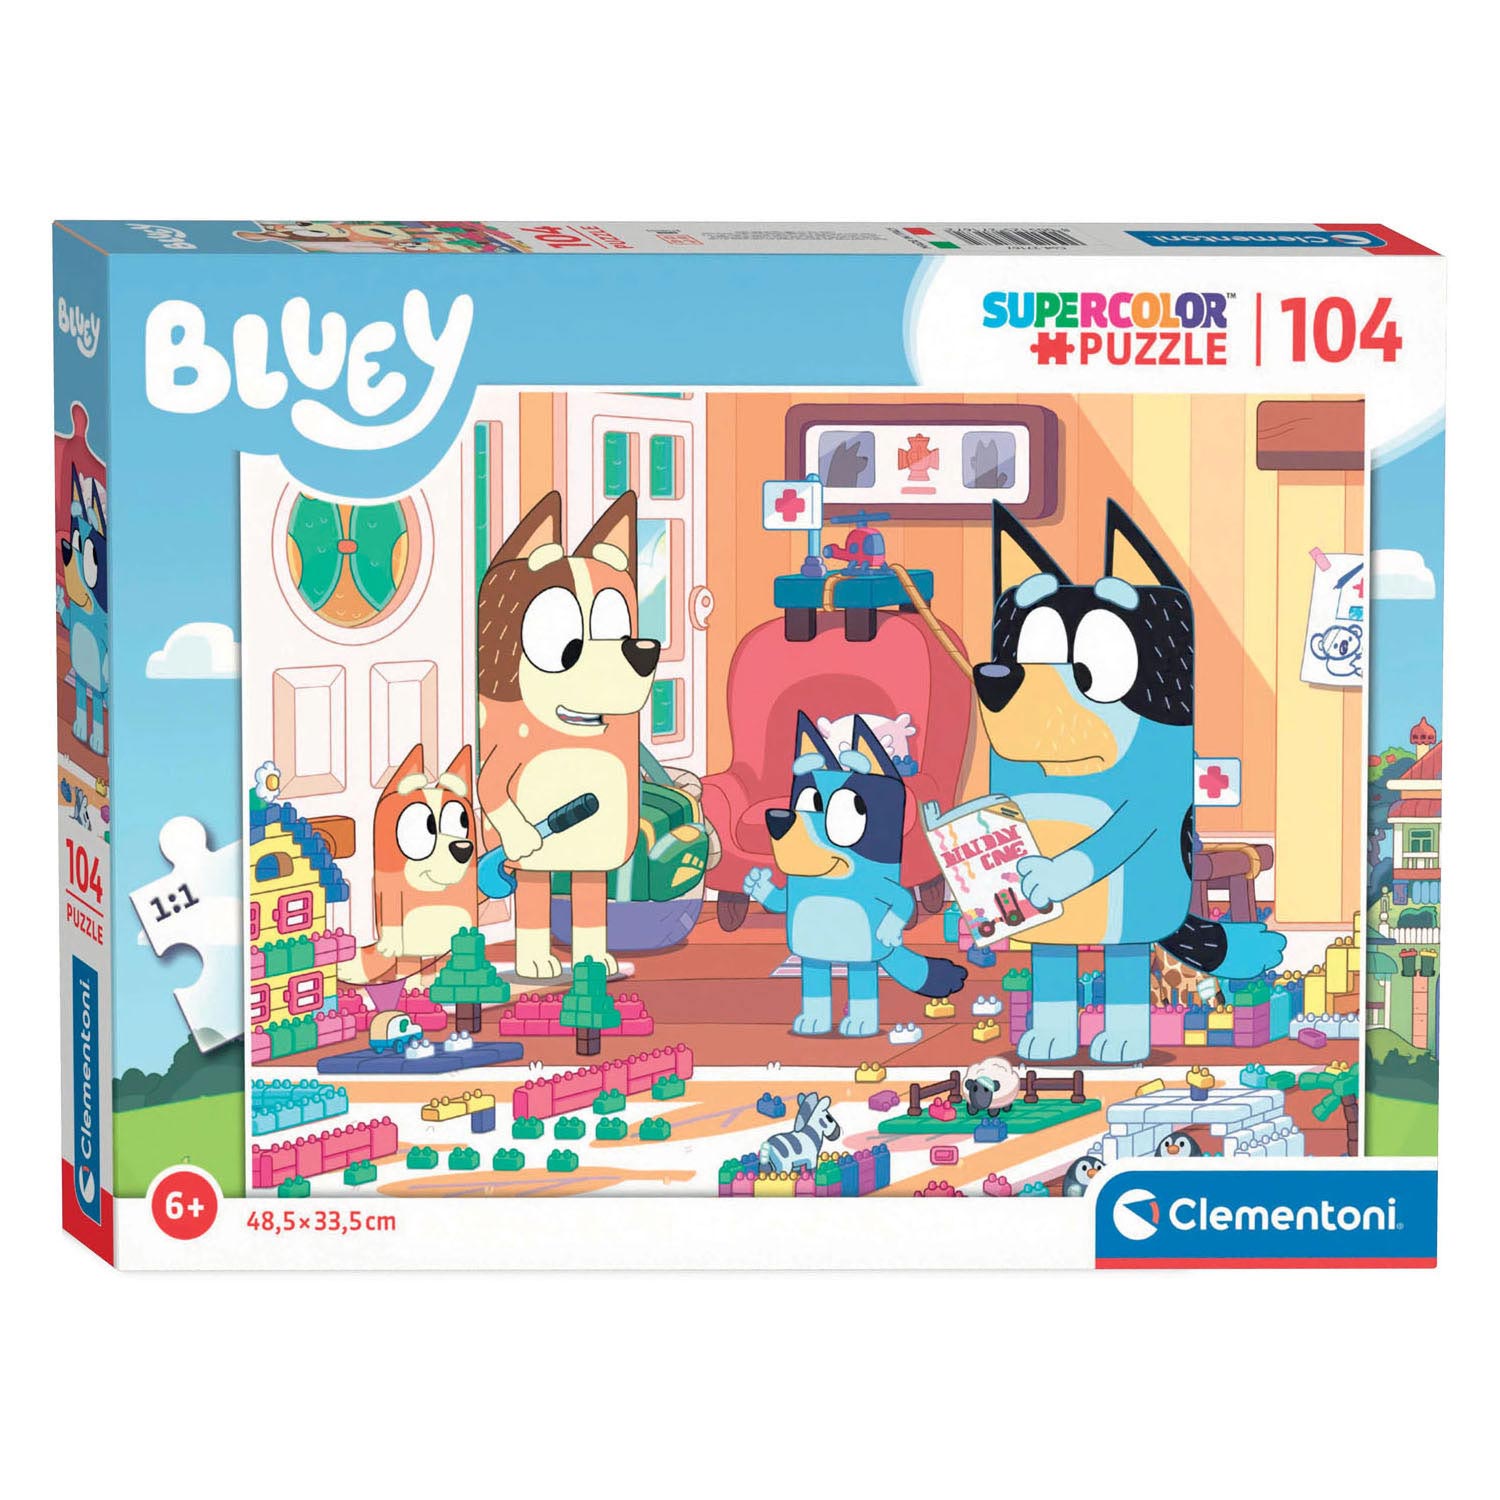 Clementoni Kinderpuzzels - Bluey 104 stukjes, Puzzel, 6+ jaar